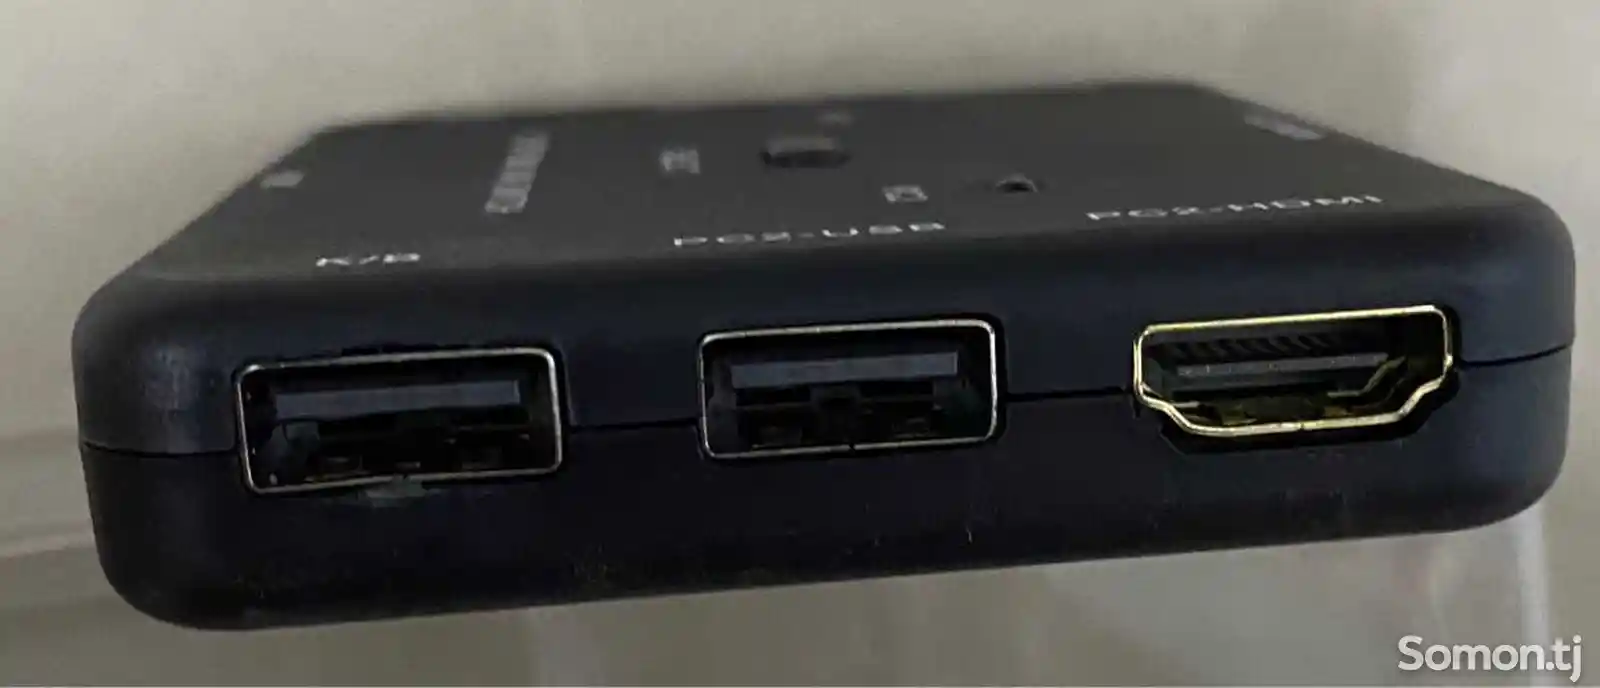 Переключатель HDMI Kvm Switch+Usb-4